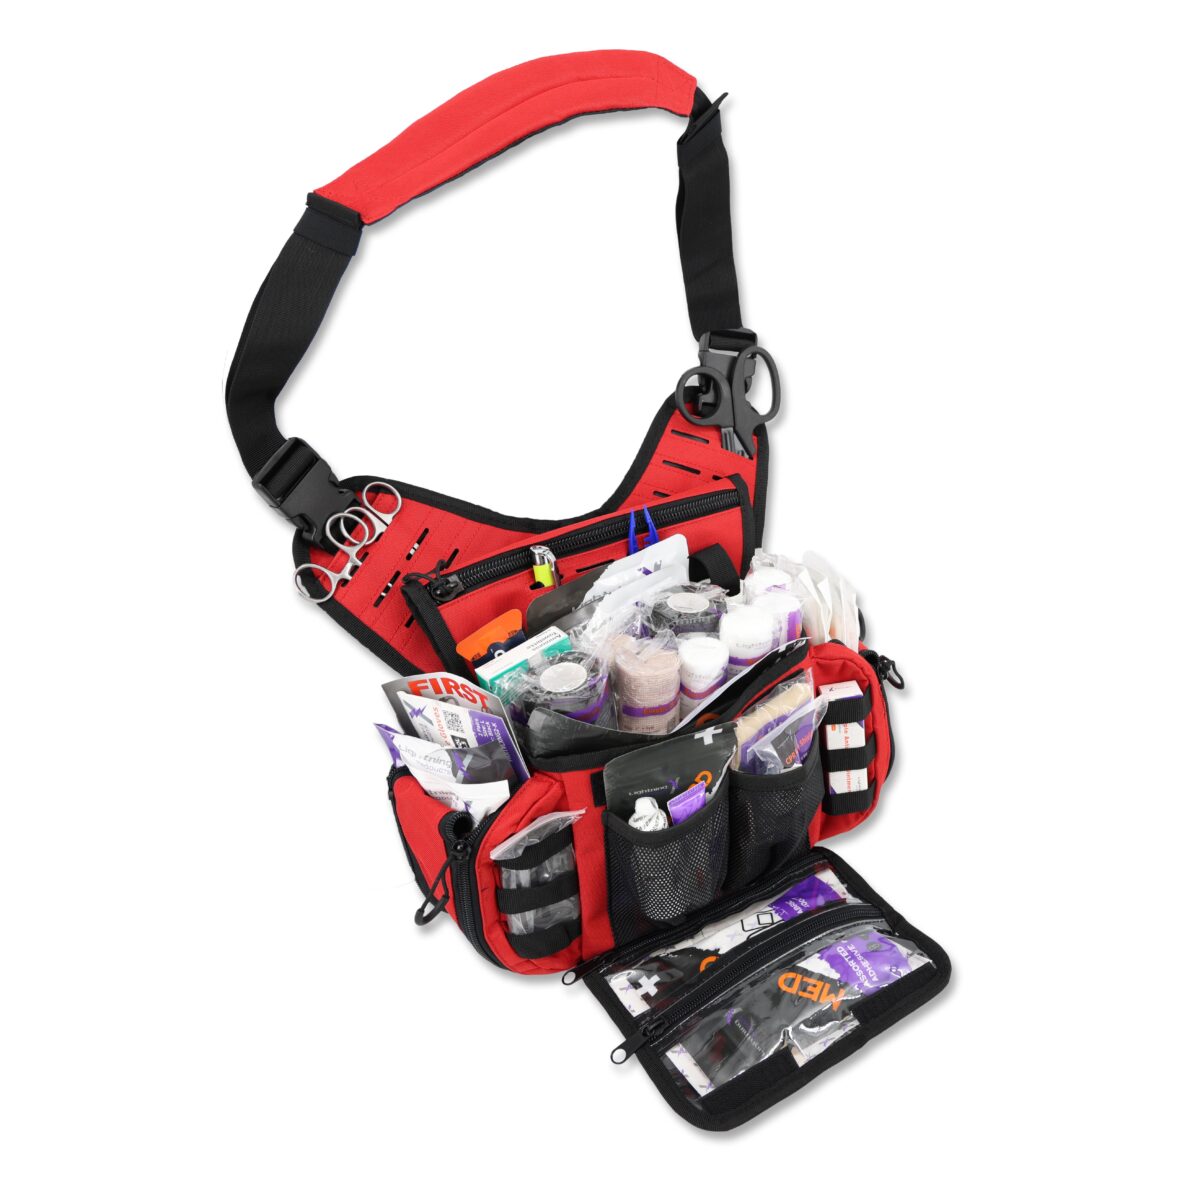 lightning x tactical medsling sling pack pre stocked first aid responder tacmed shoulder messenger bag mb15-ska red